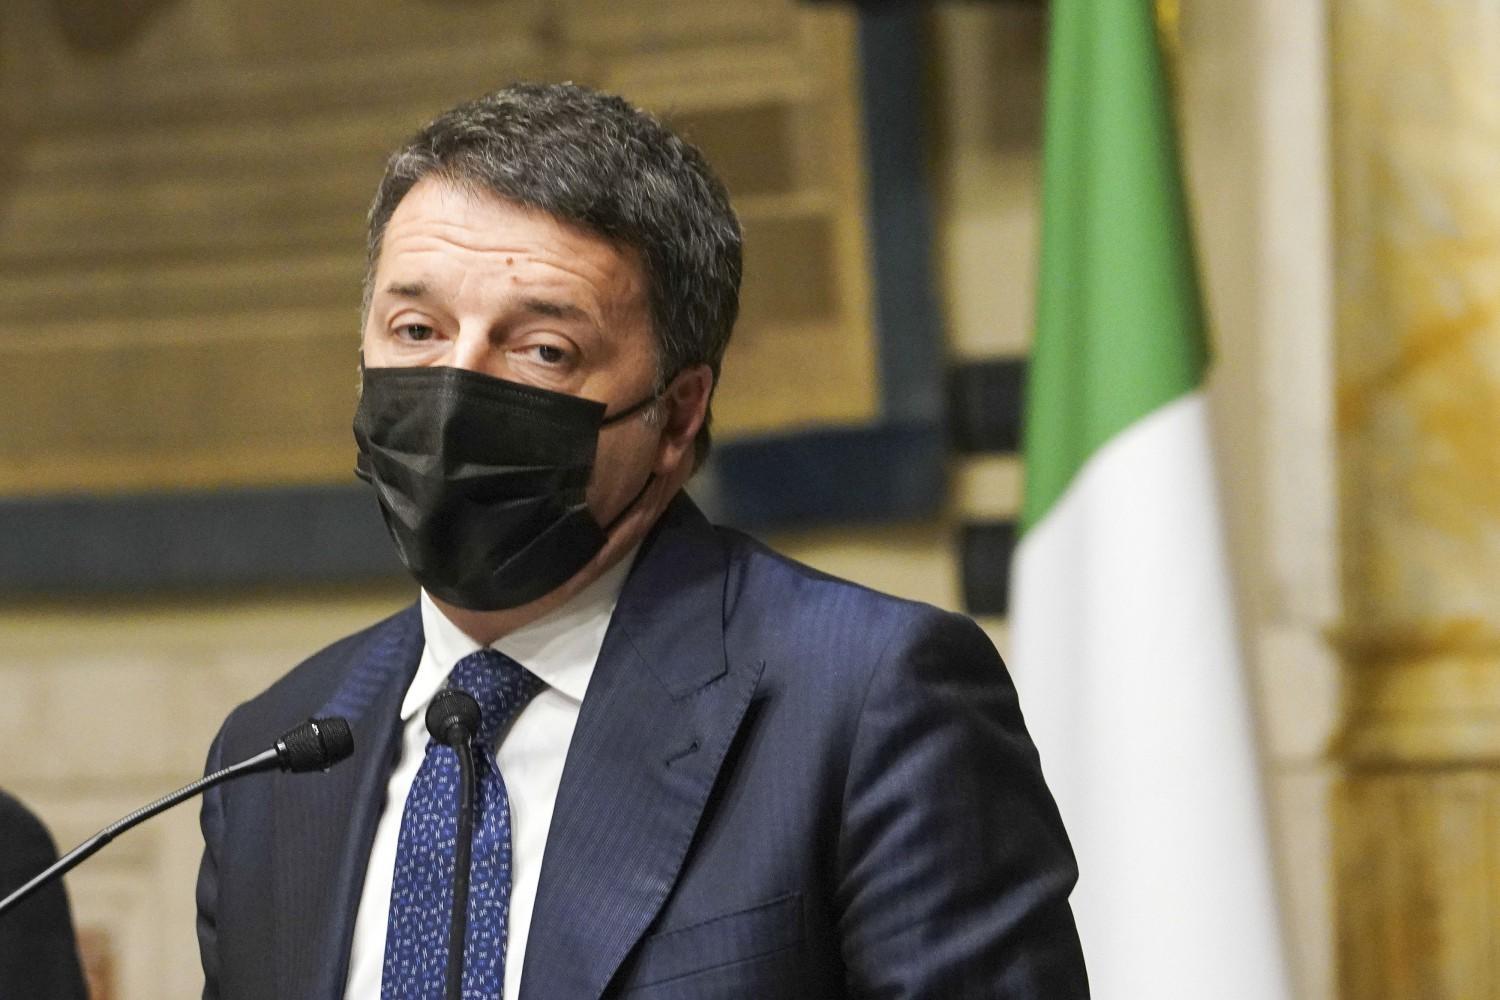 #RenziRispondi e #RenziDimettiti su Twitter: ma lui non risponde, né si dimette